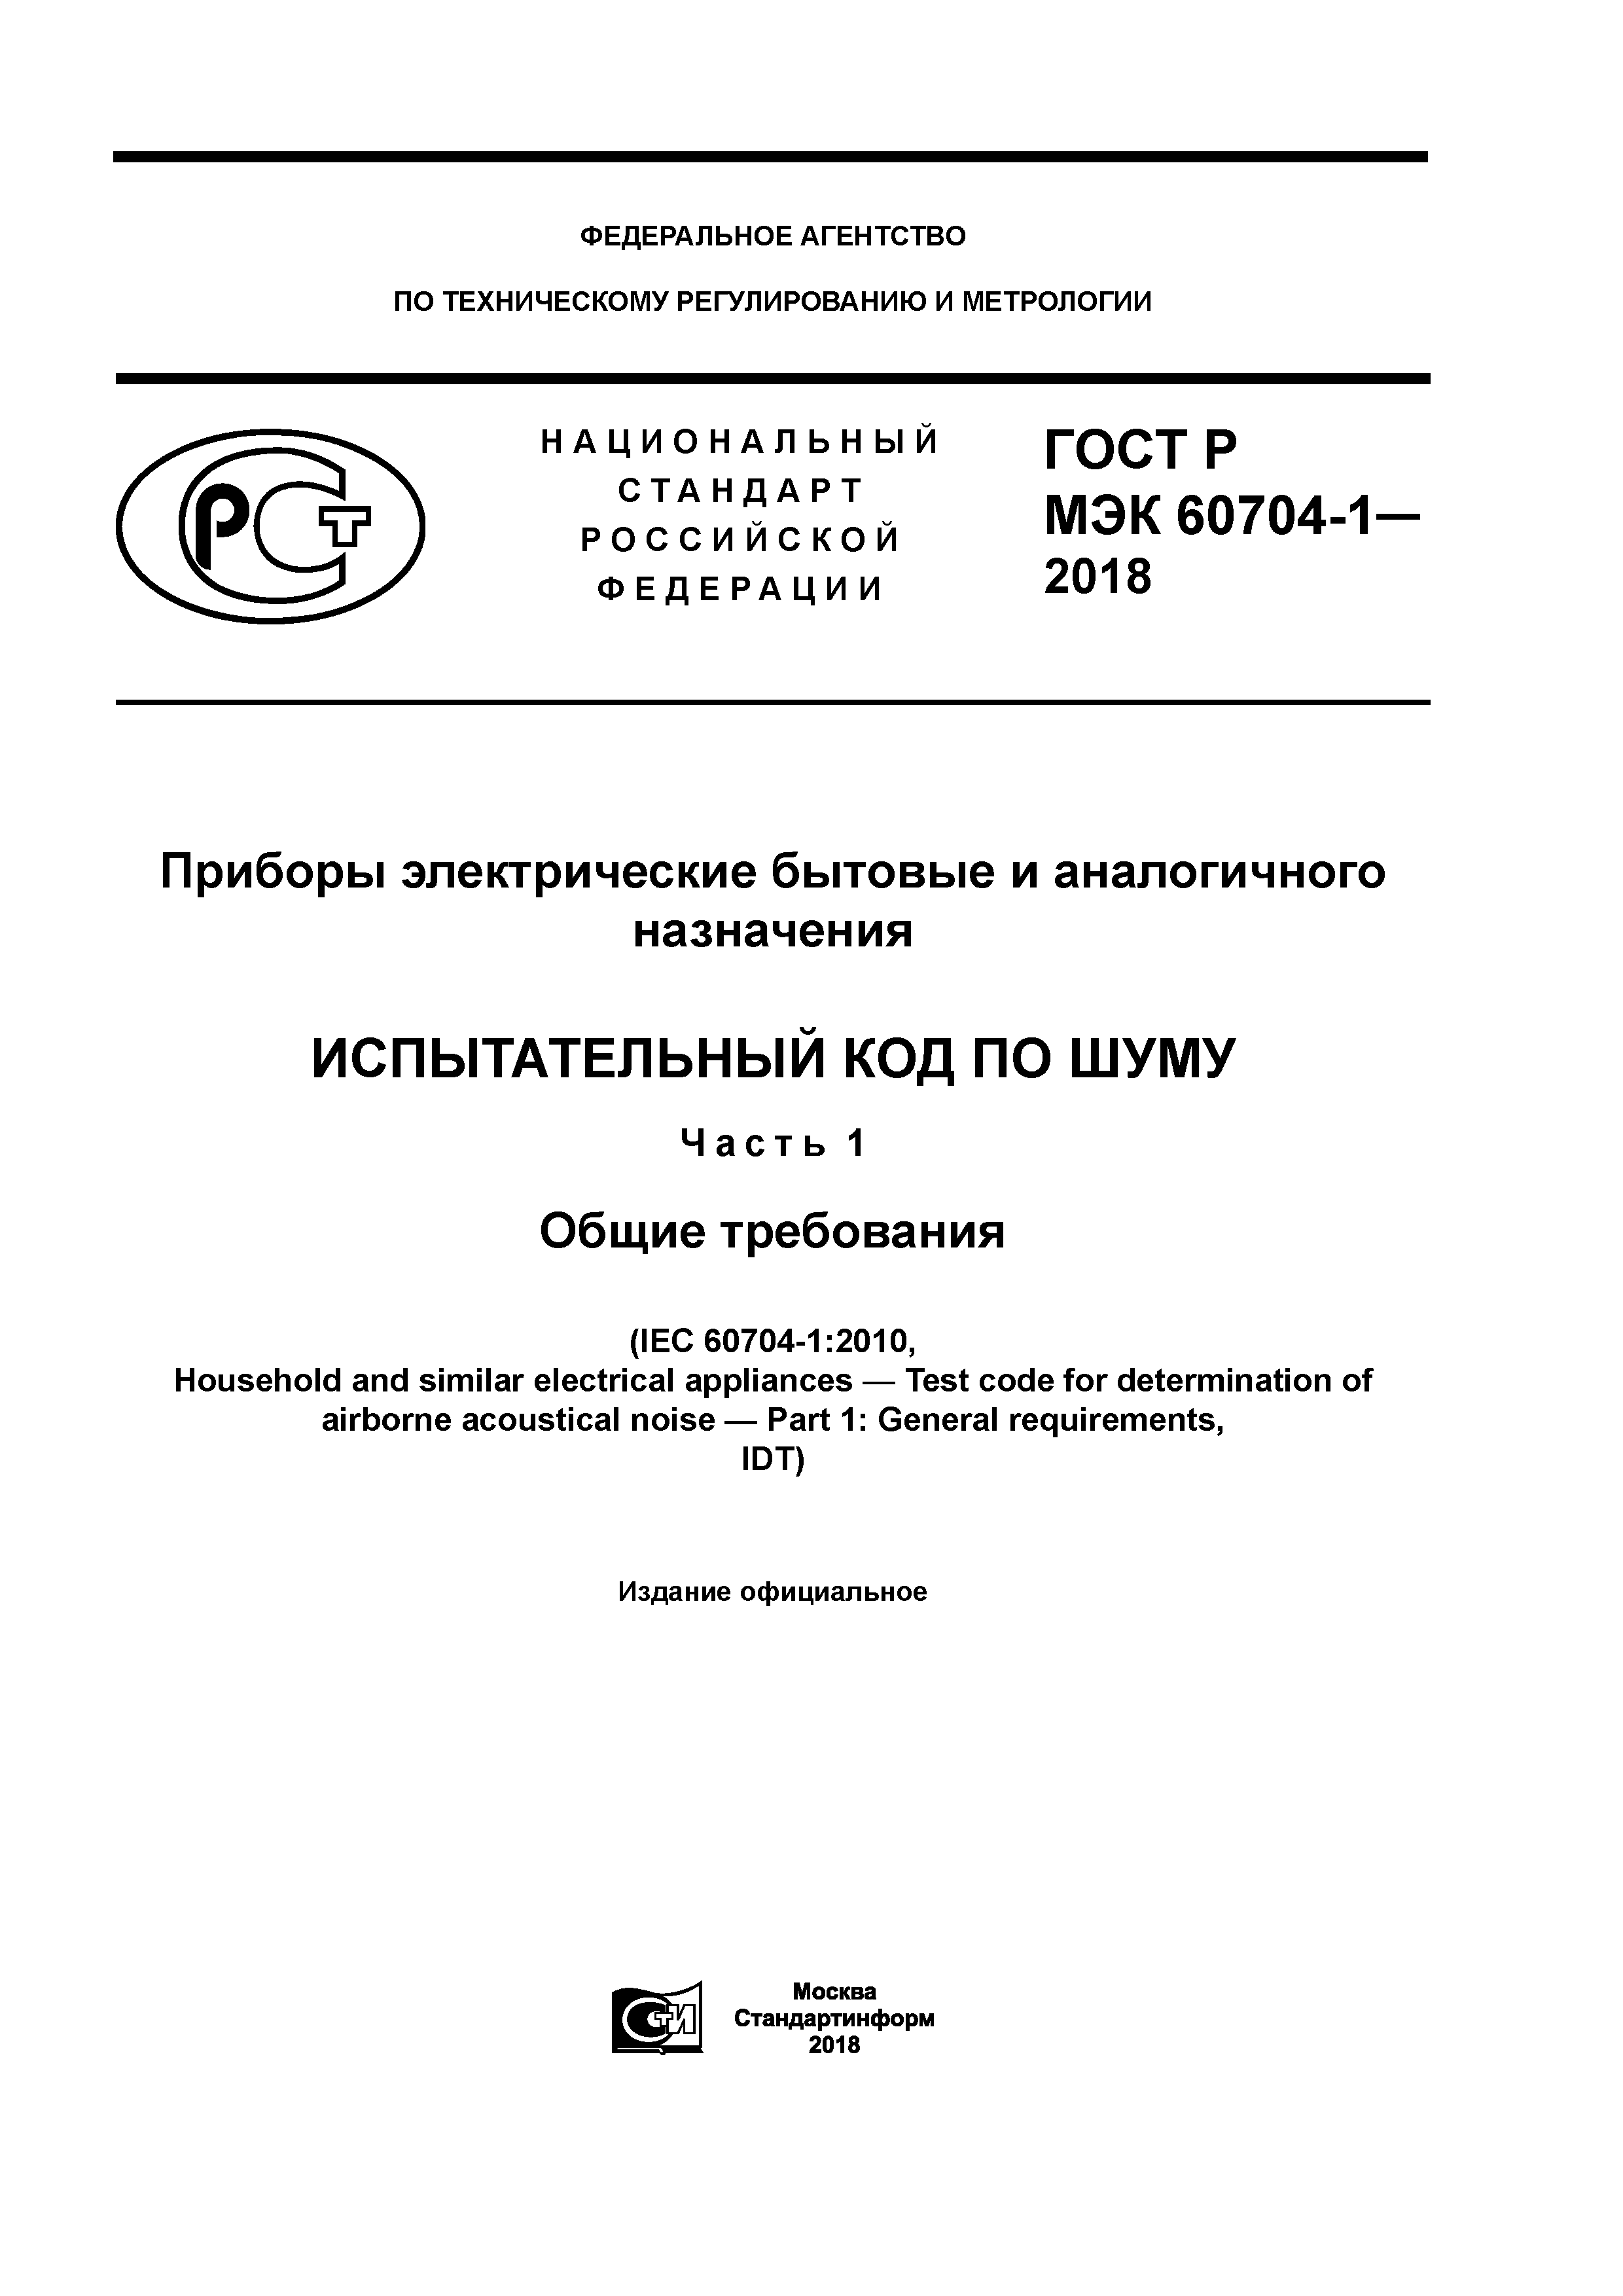 ГОСТ Р МЭК 60704-1-2018